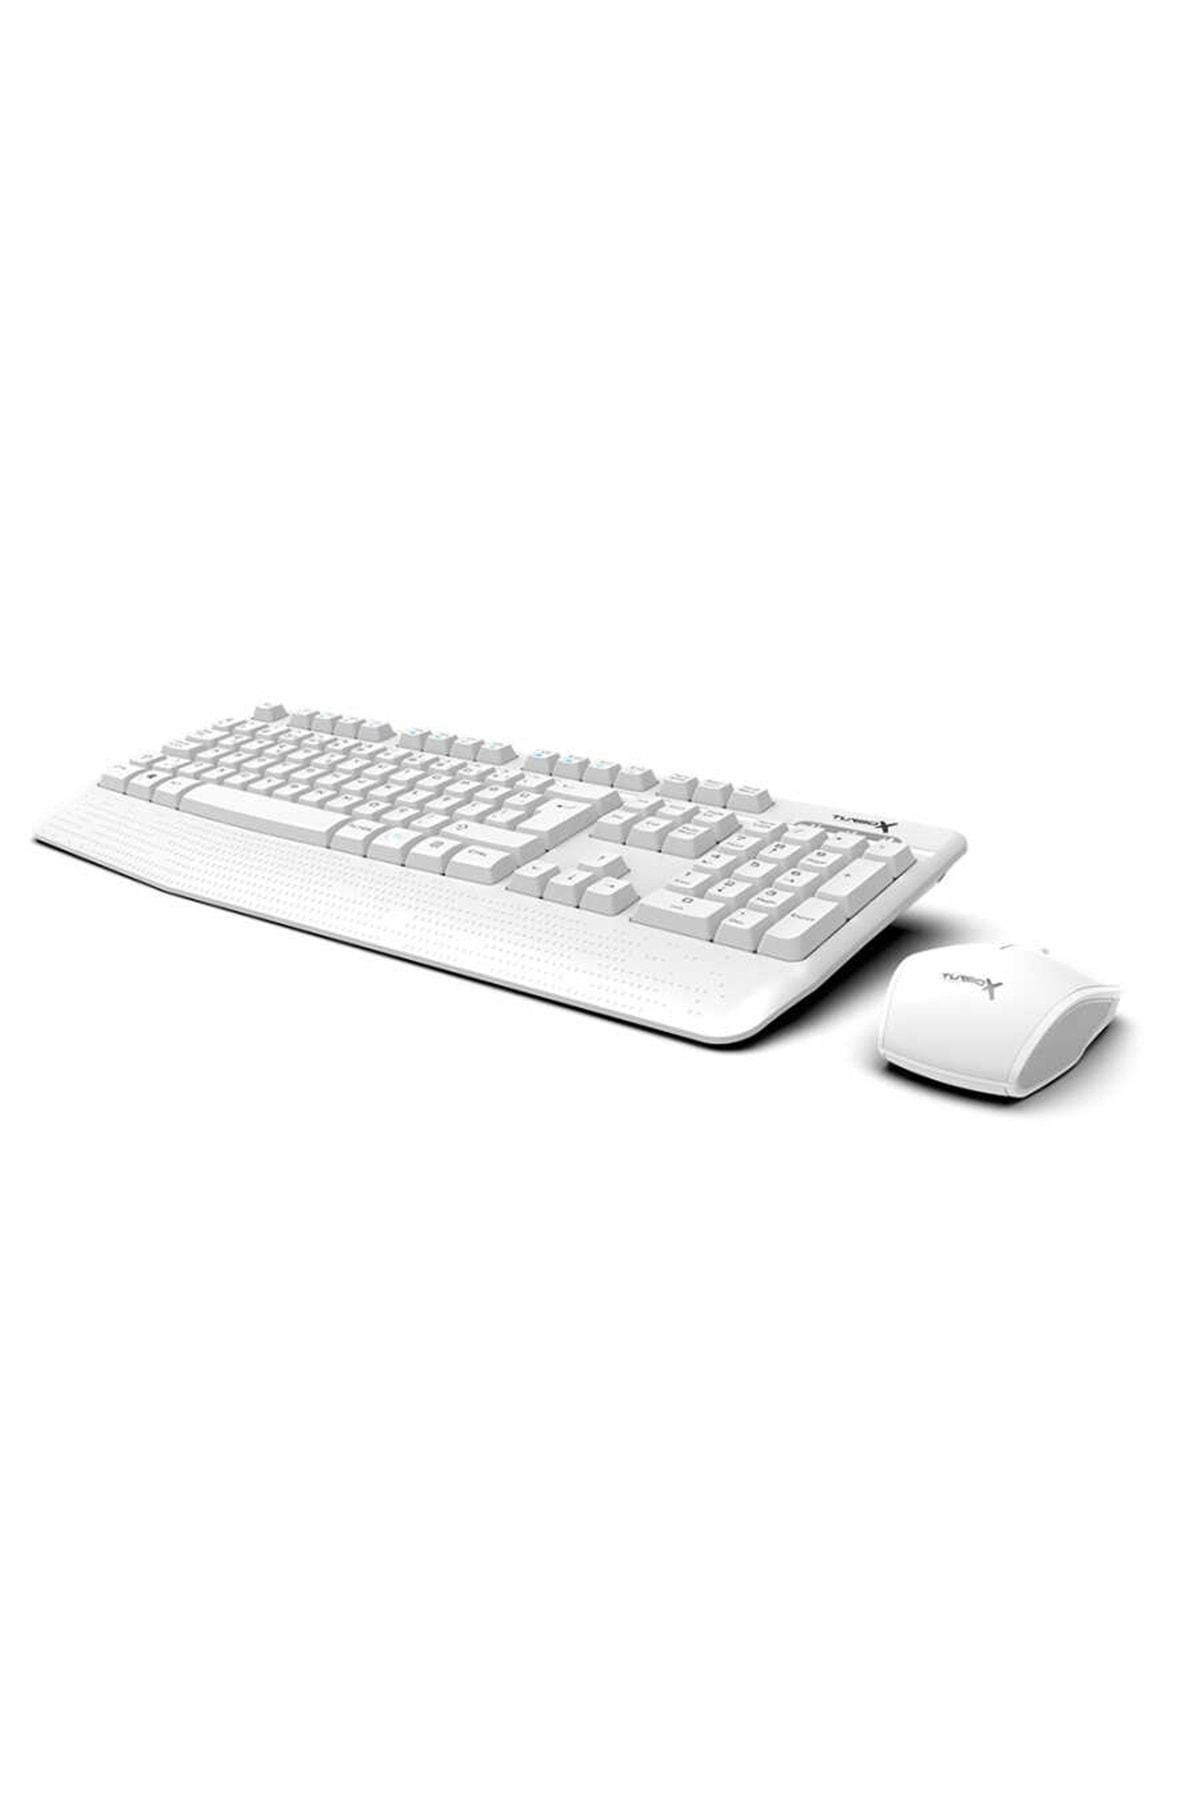 TURBOX Workeys Office USB Kablosuz 2.4ghz Beyaz Multimedya Standart Q Kablosuz Klavye ve Mouse